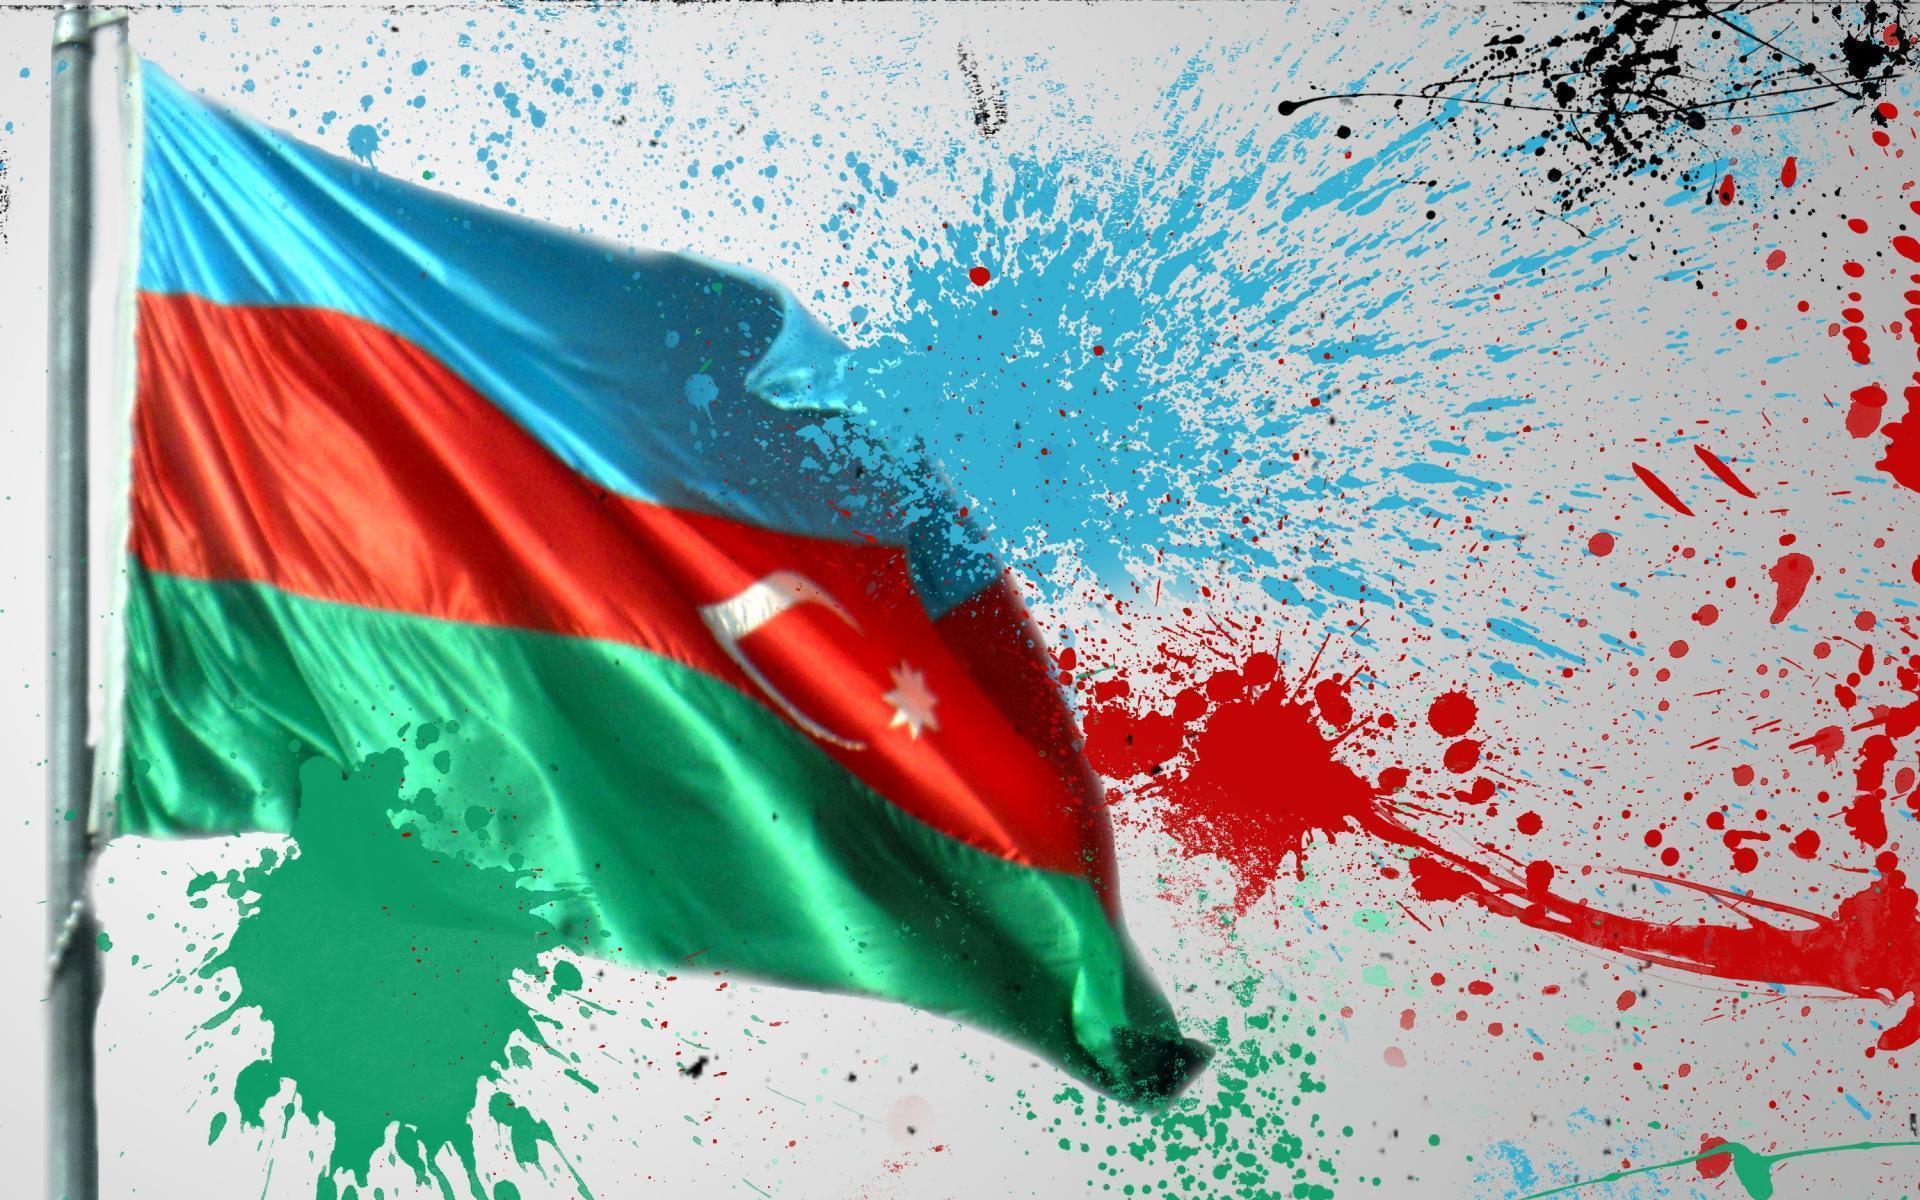 پرچم جمهوری آذربایجان (Azerbaijan Flag)